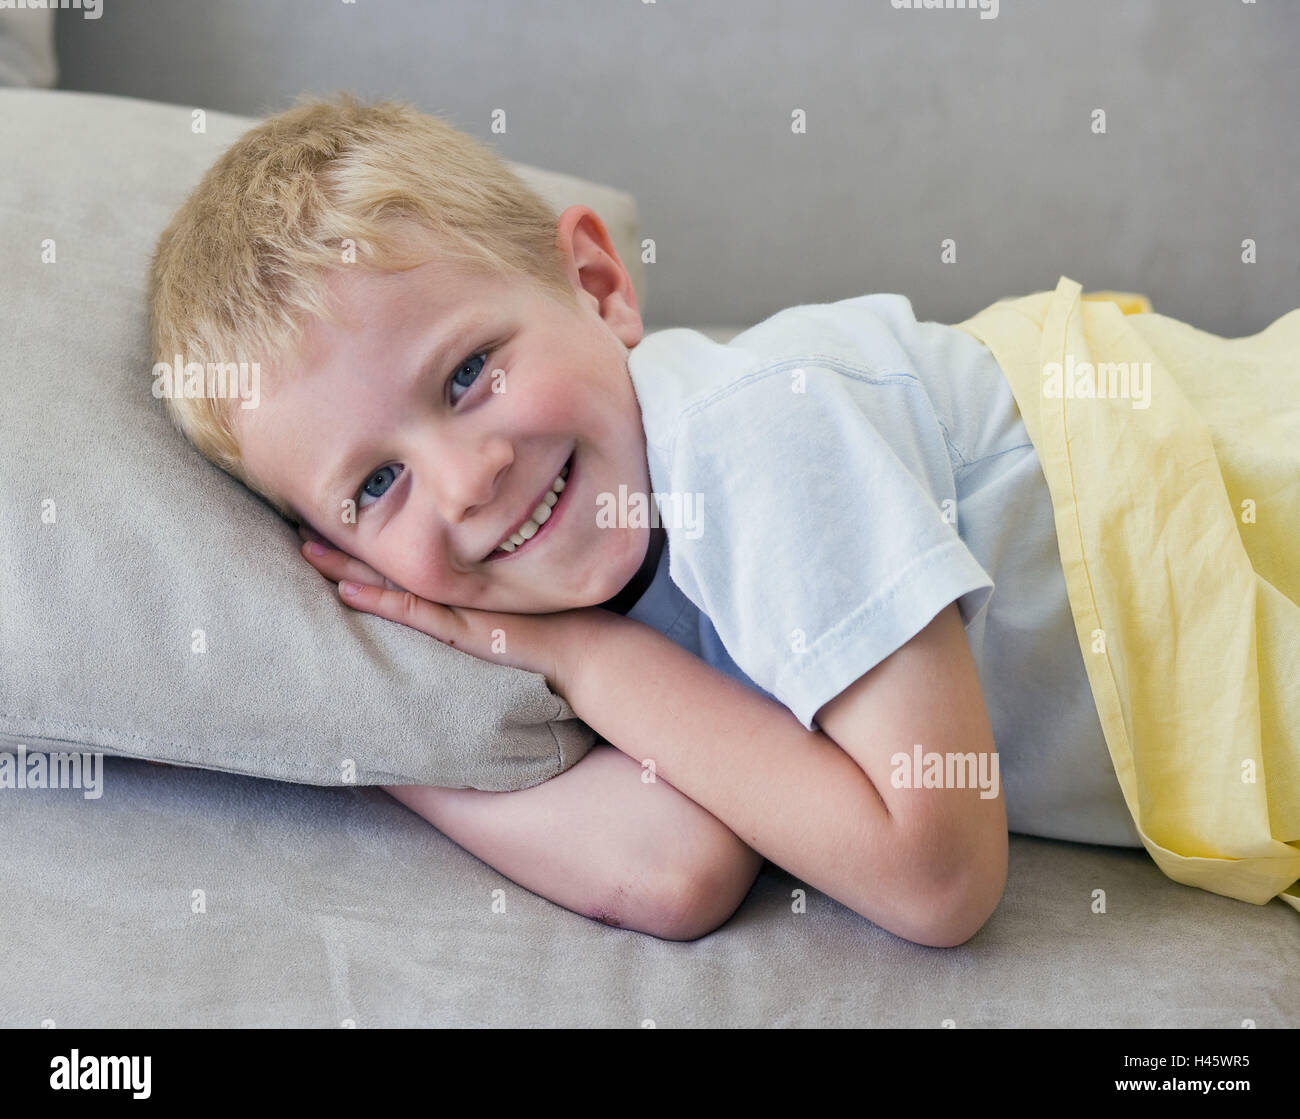 Sofa, boy, rest, smile, lie, portrait, Stock Photo